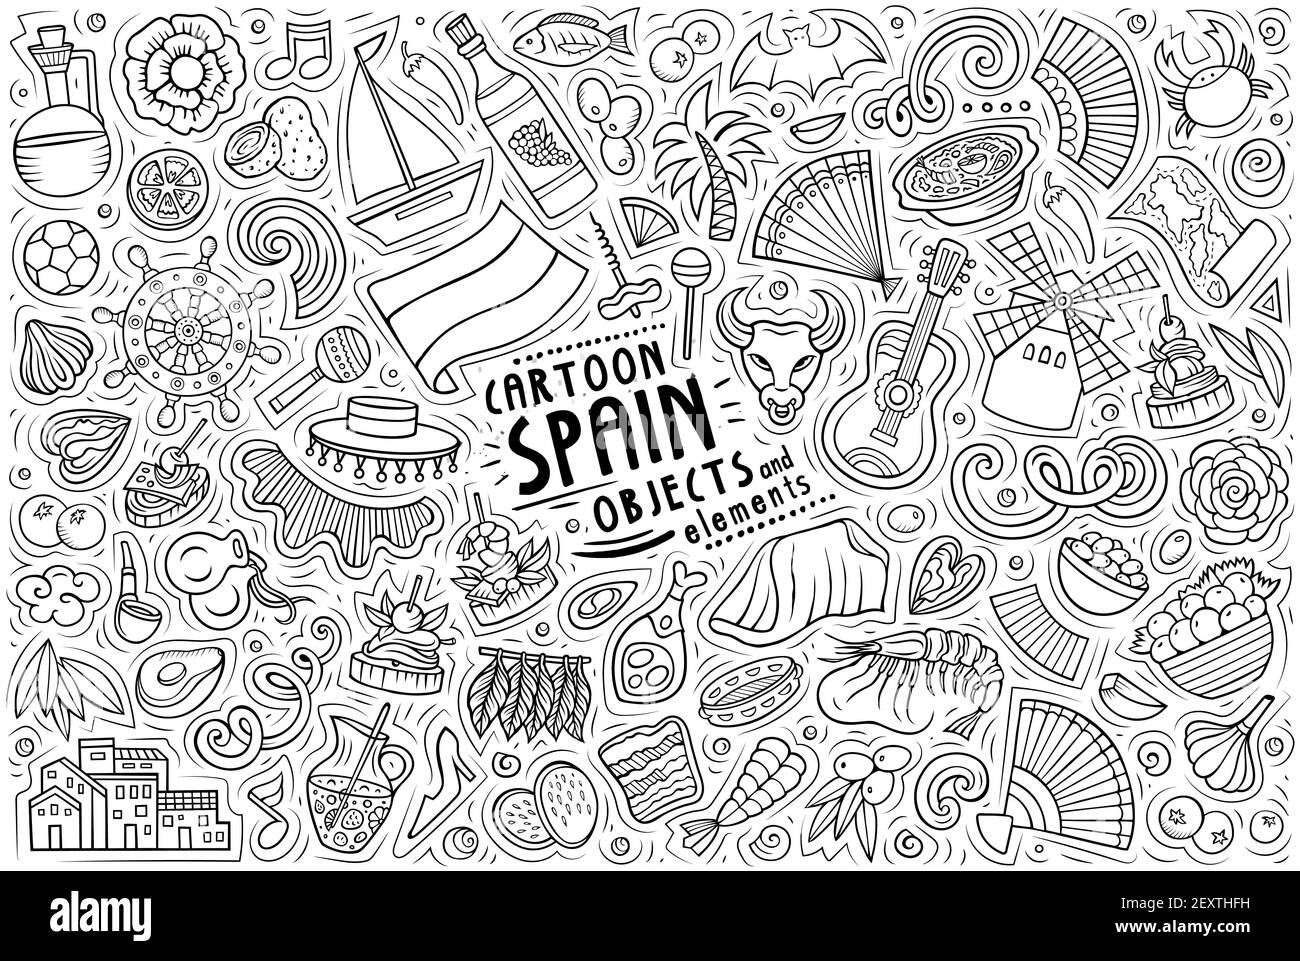 Line art vettoriale doodle disegnate a mano cartoon set di oggetti, oggetti e simboli del tema spagnolo Illustrazione Vettoriale